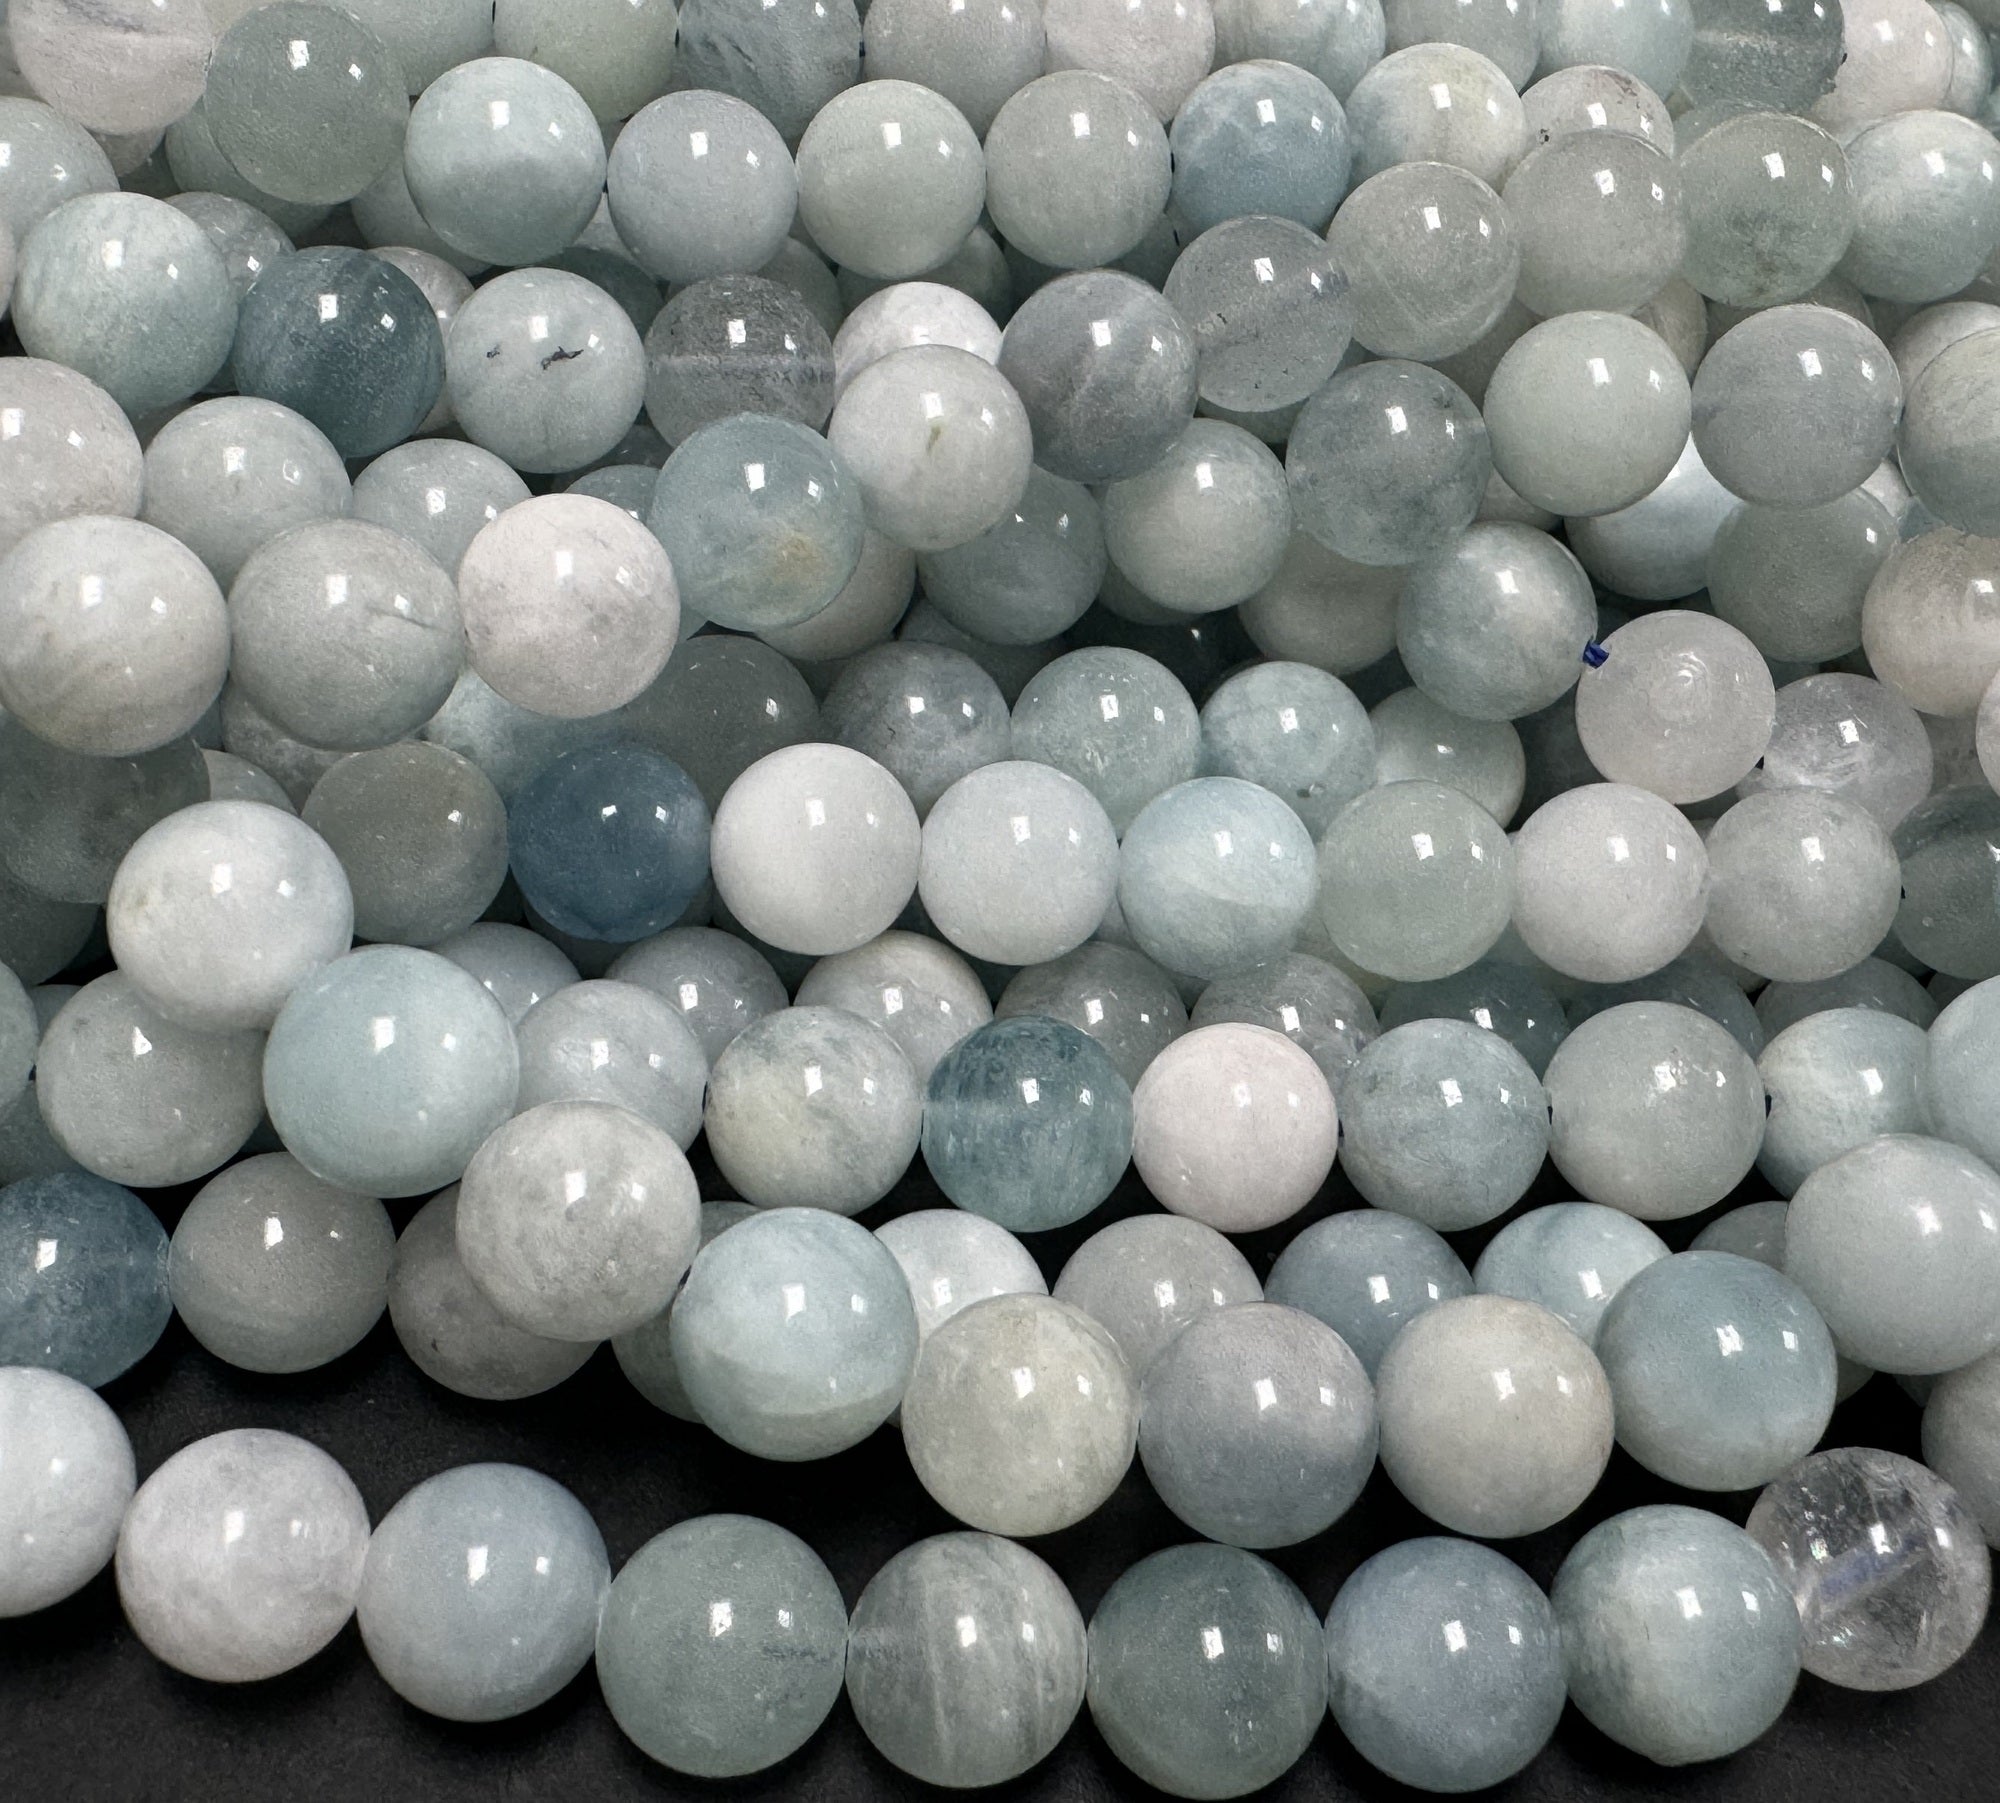 Aquamarine 8mm round natural gemstone beads 16" strand